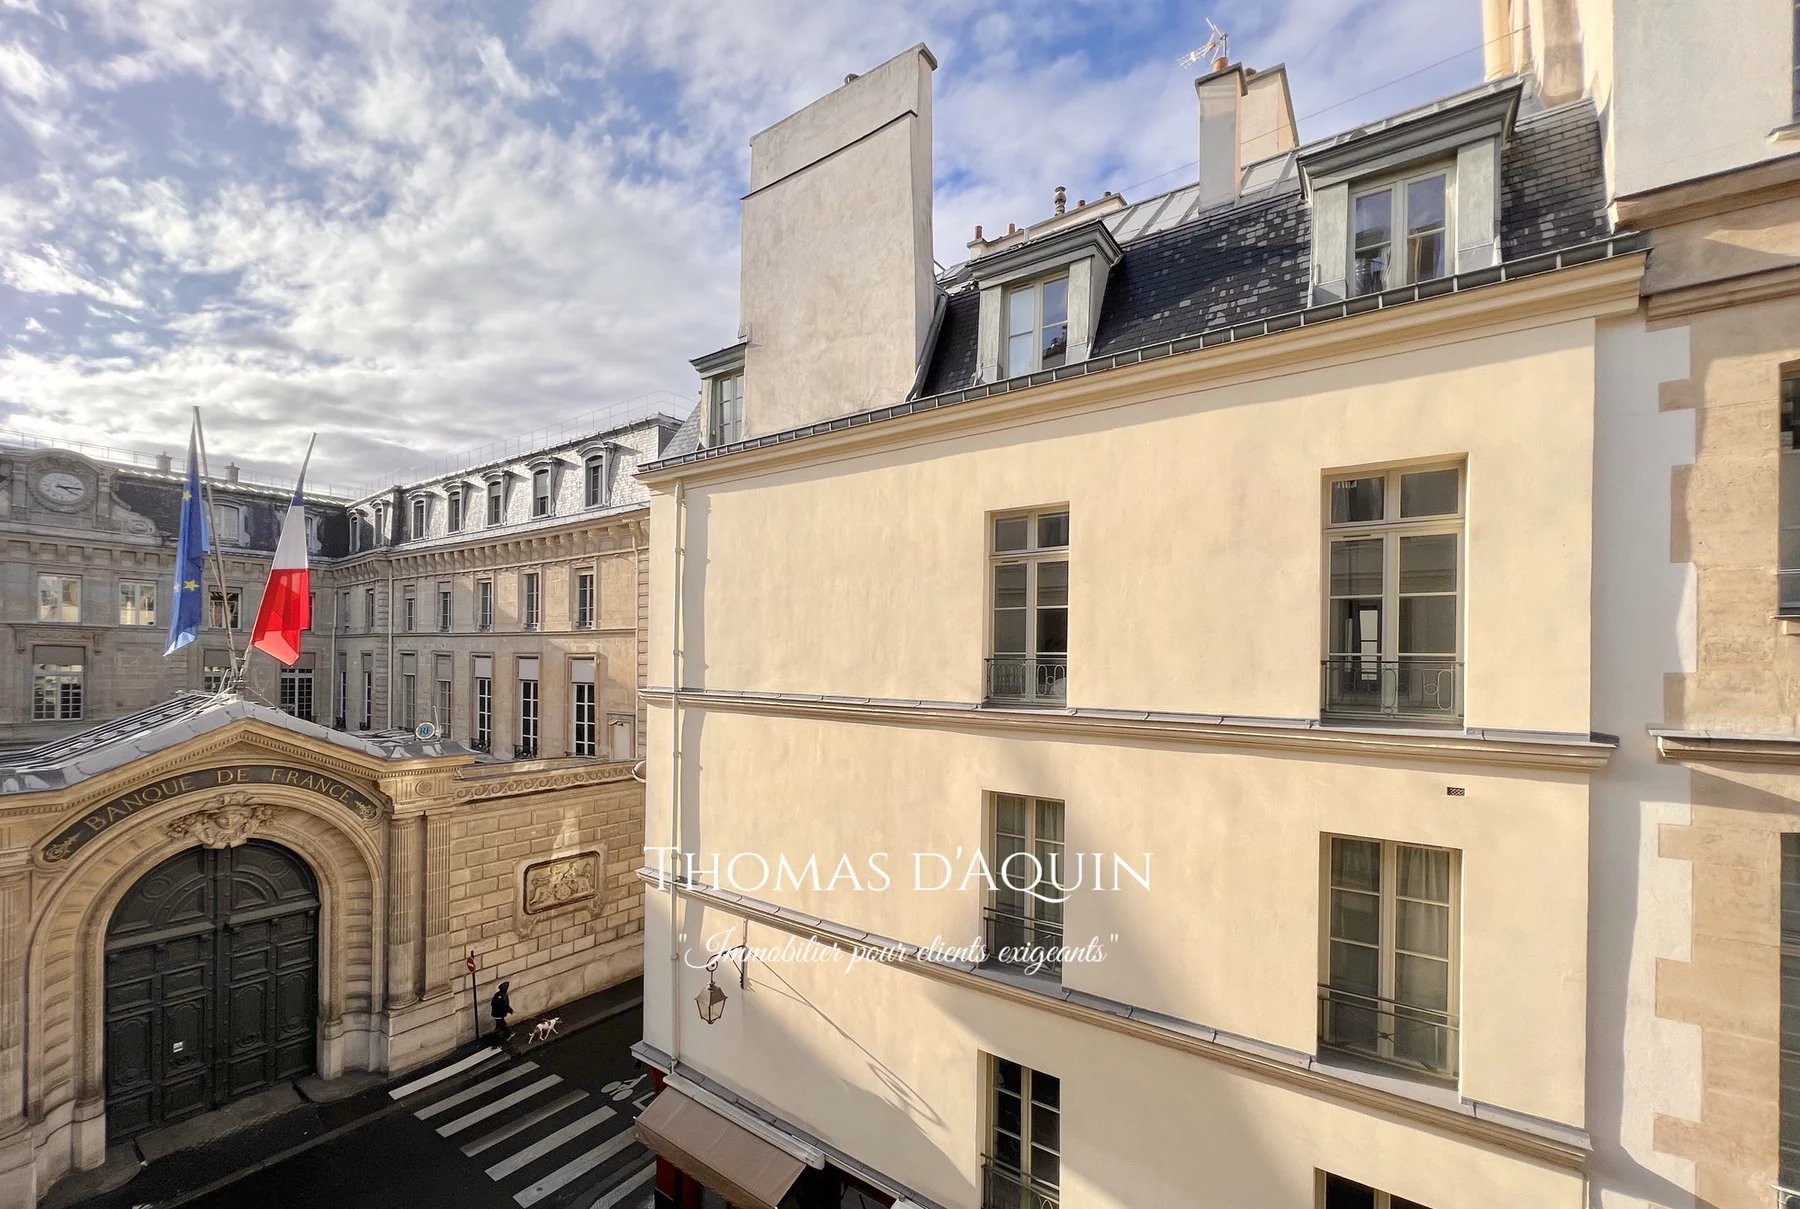 Sale Apartment - Paris 1st (Paris 1er) Palais-Royal